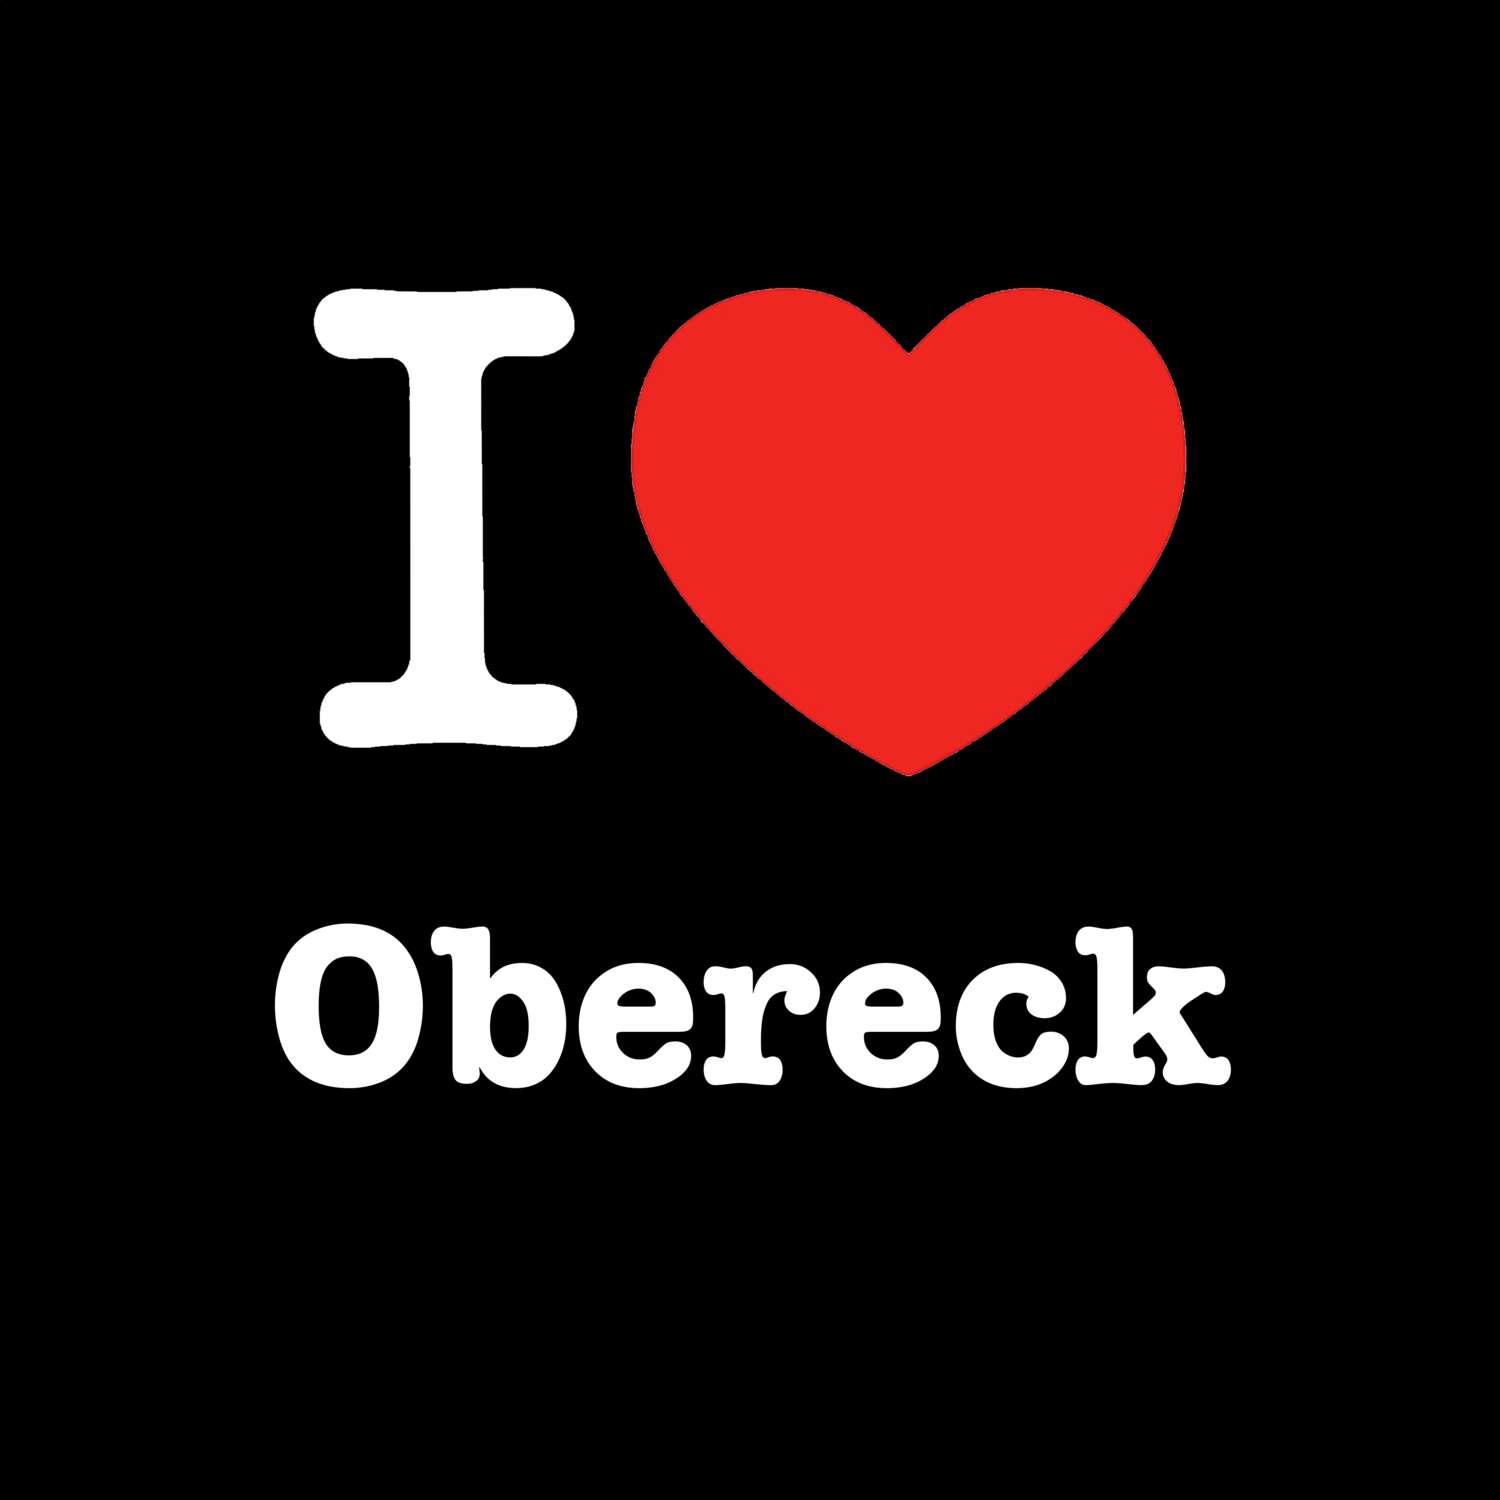 Obereck T-Shirt »I love«